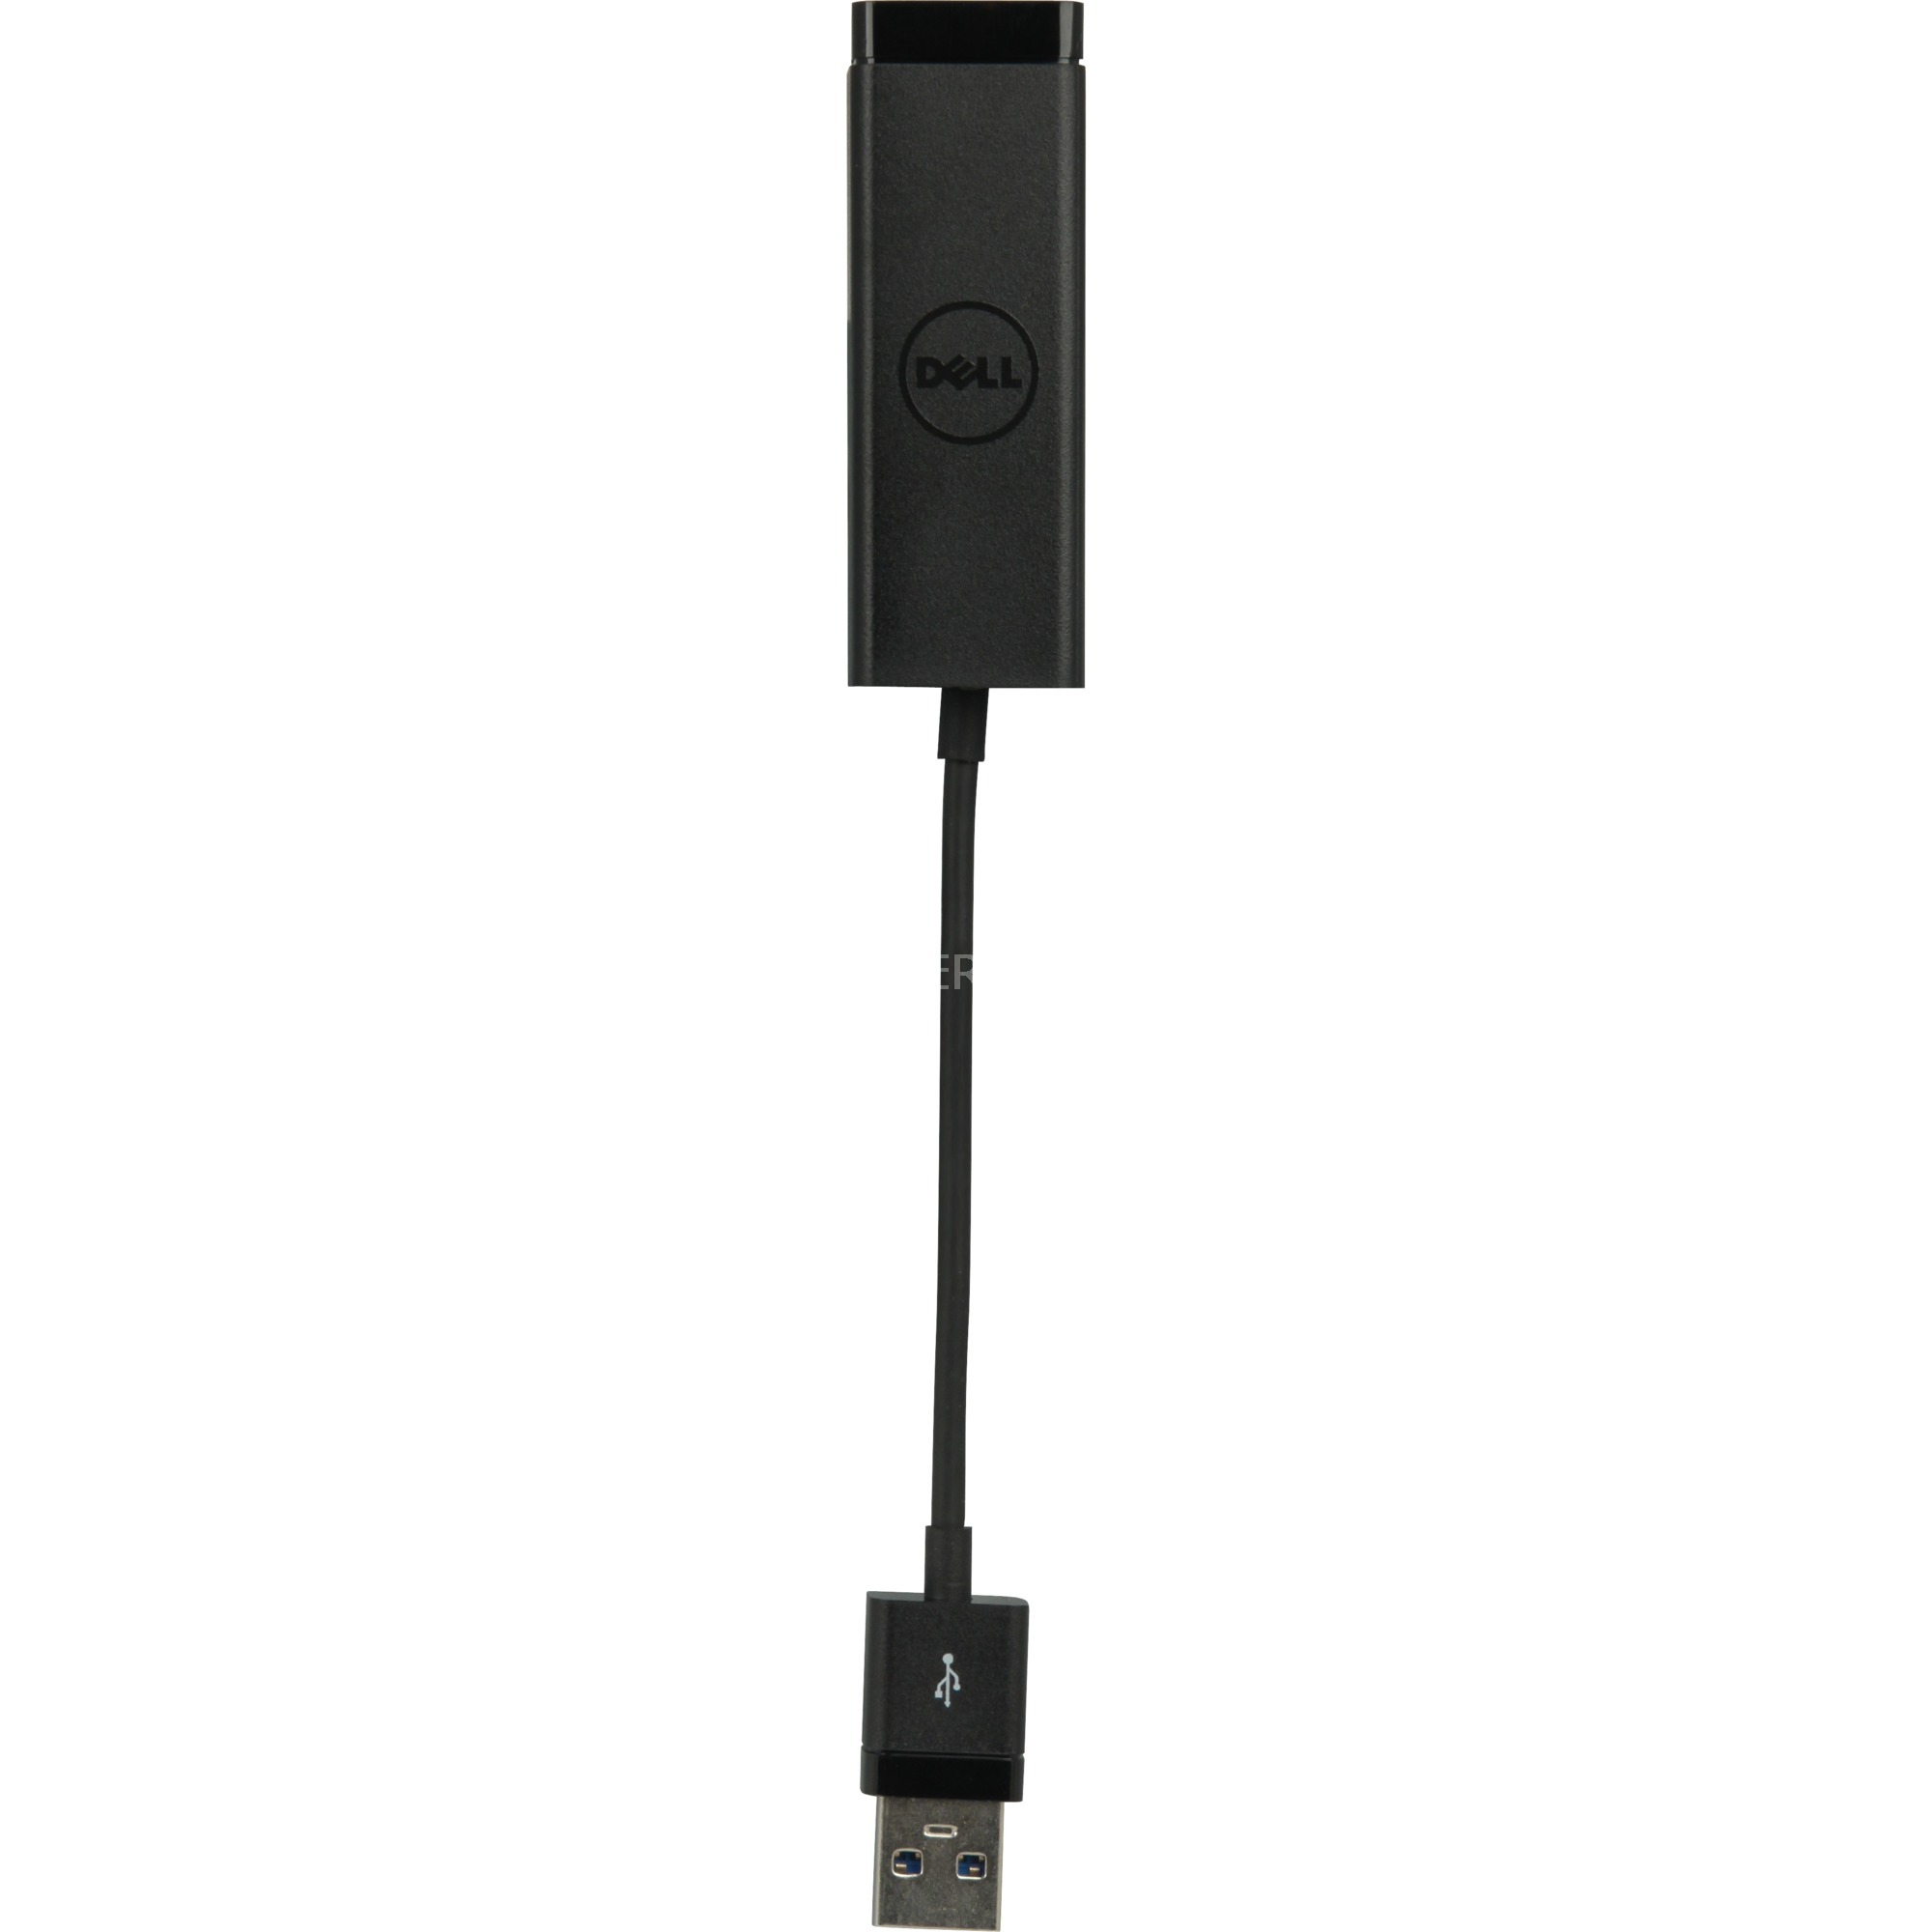 Image of Alternate - Adapter USB-A 3.0 (Stecker) > Gigabit Ethernet (Buchse) online einkaufen bei Alternate